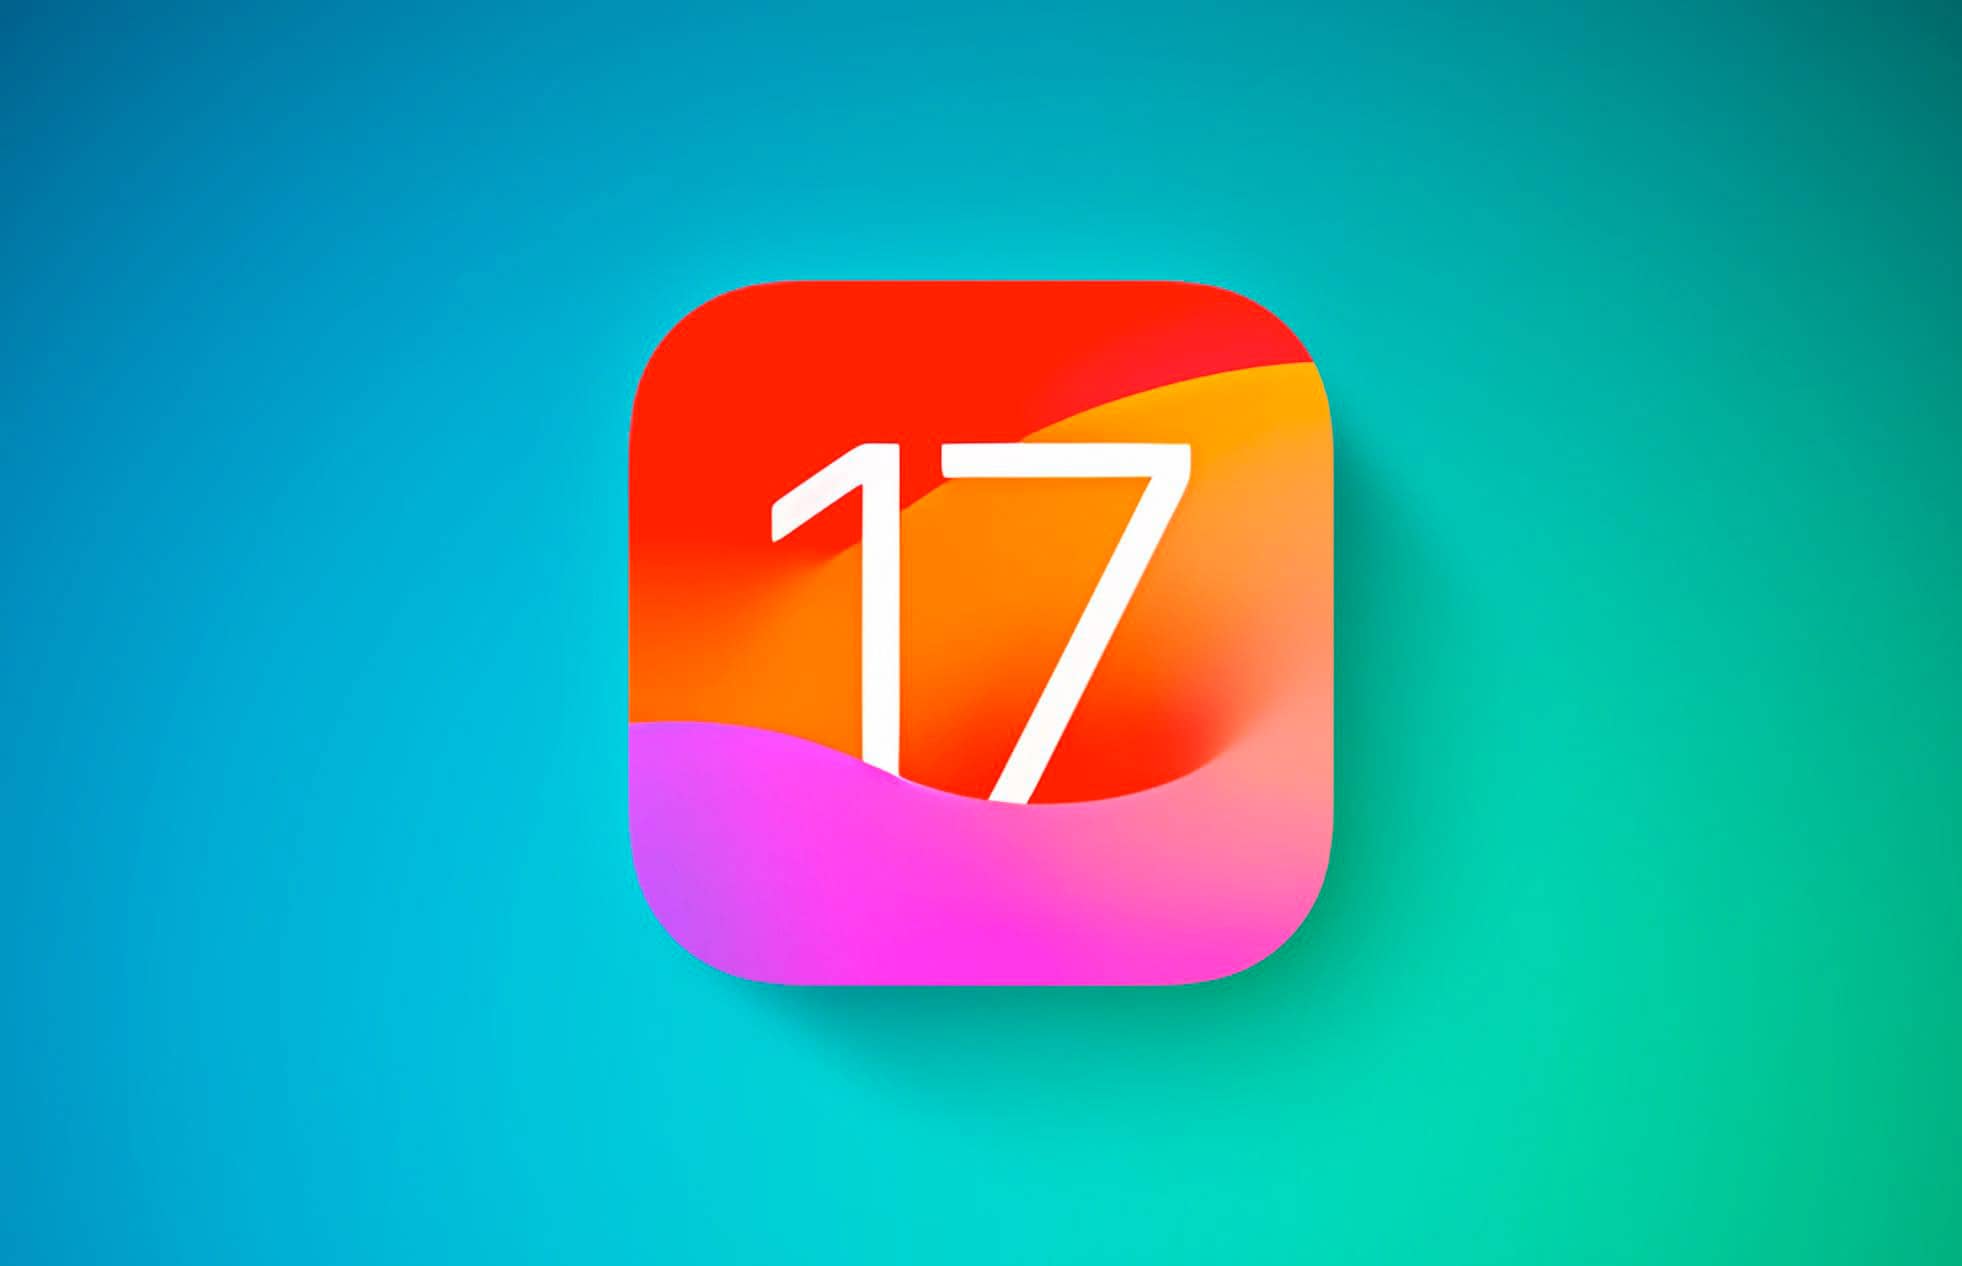 Apple випустила iOS 17 beta 5 для розробників